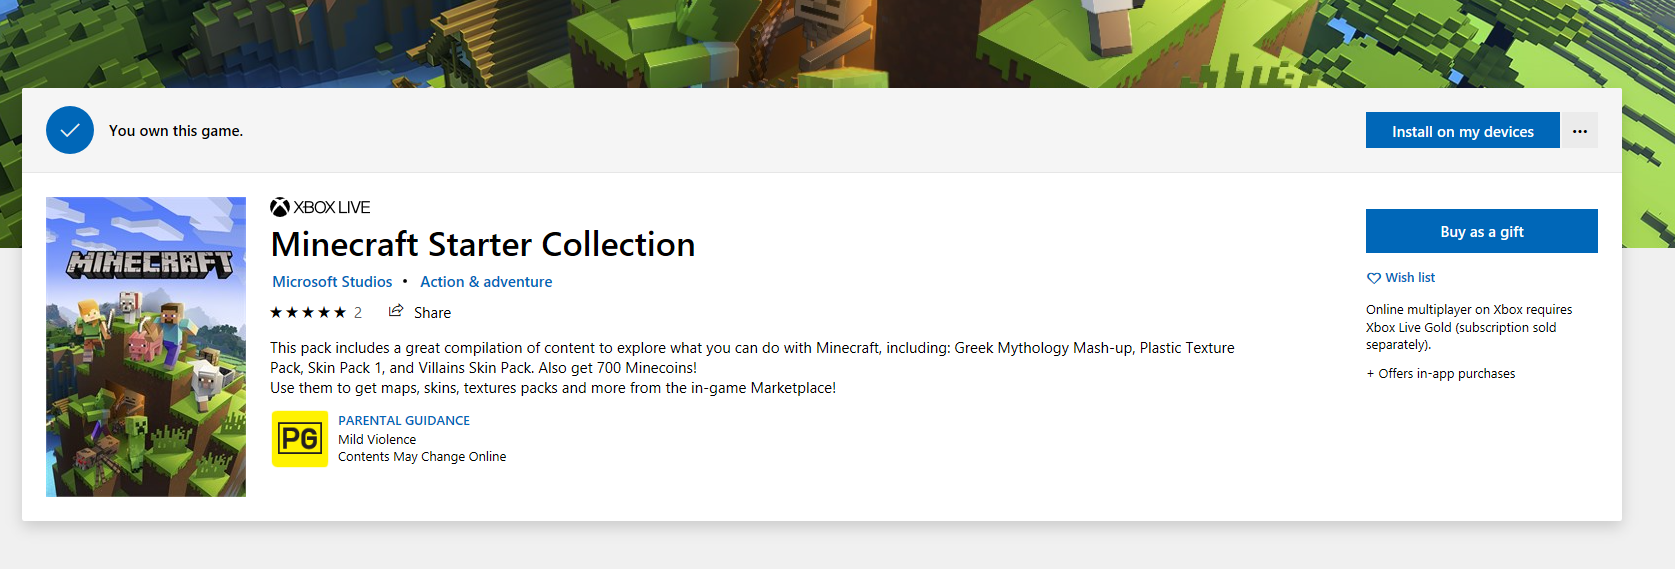 Minecraft Windows 10 Edition wont download fe7d986d-257d-4845-b72d-0e34c40f1e4d?upload=true.png